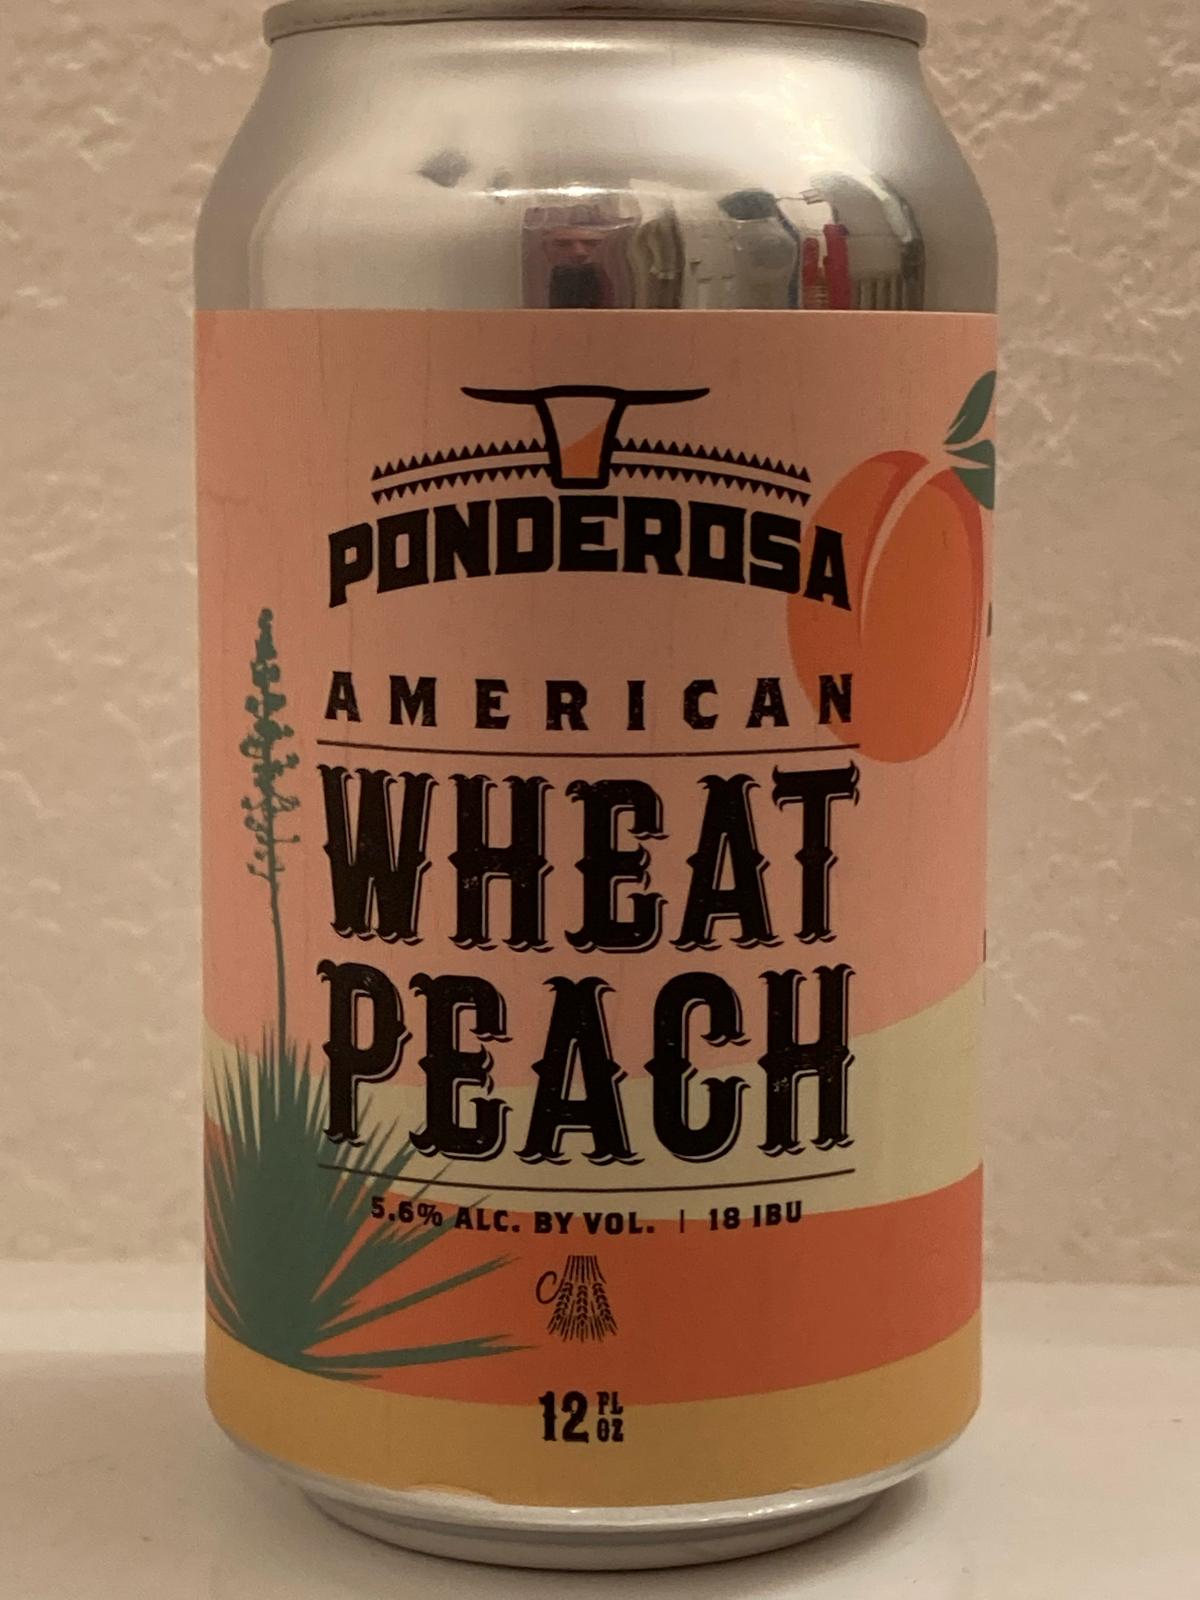 American Wheat Peach